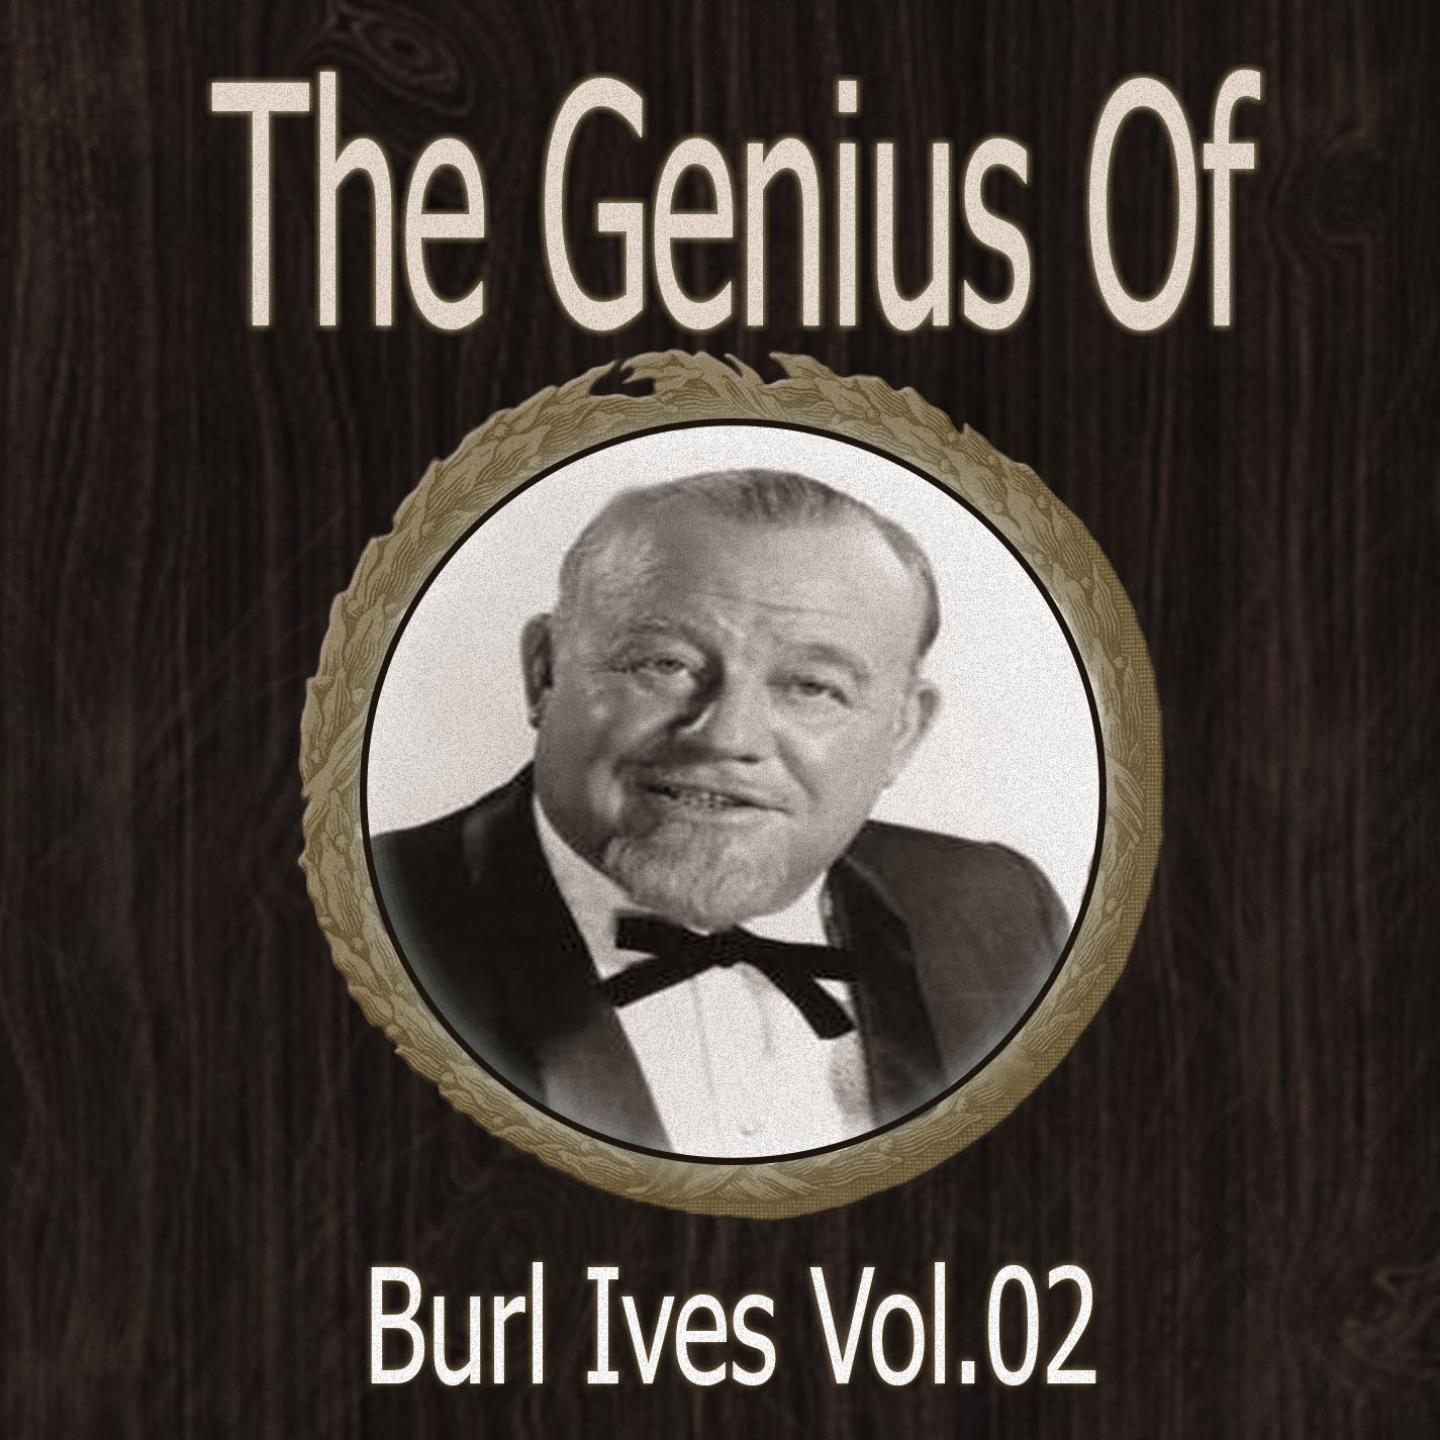 The Genius of Burl Ives Vol 02